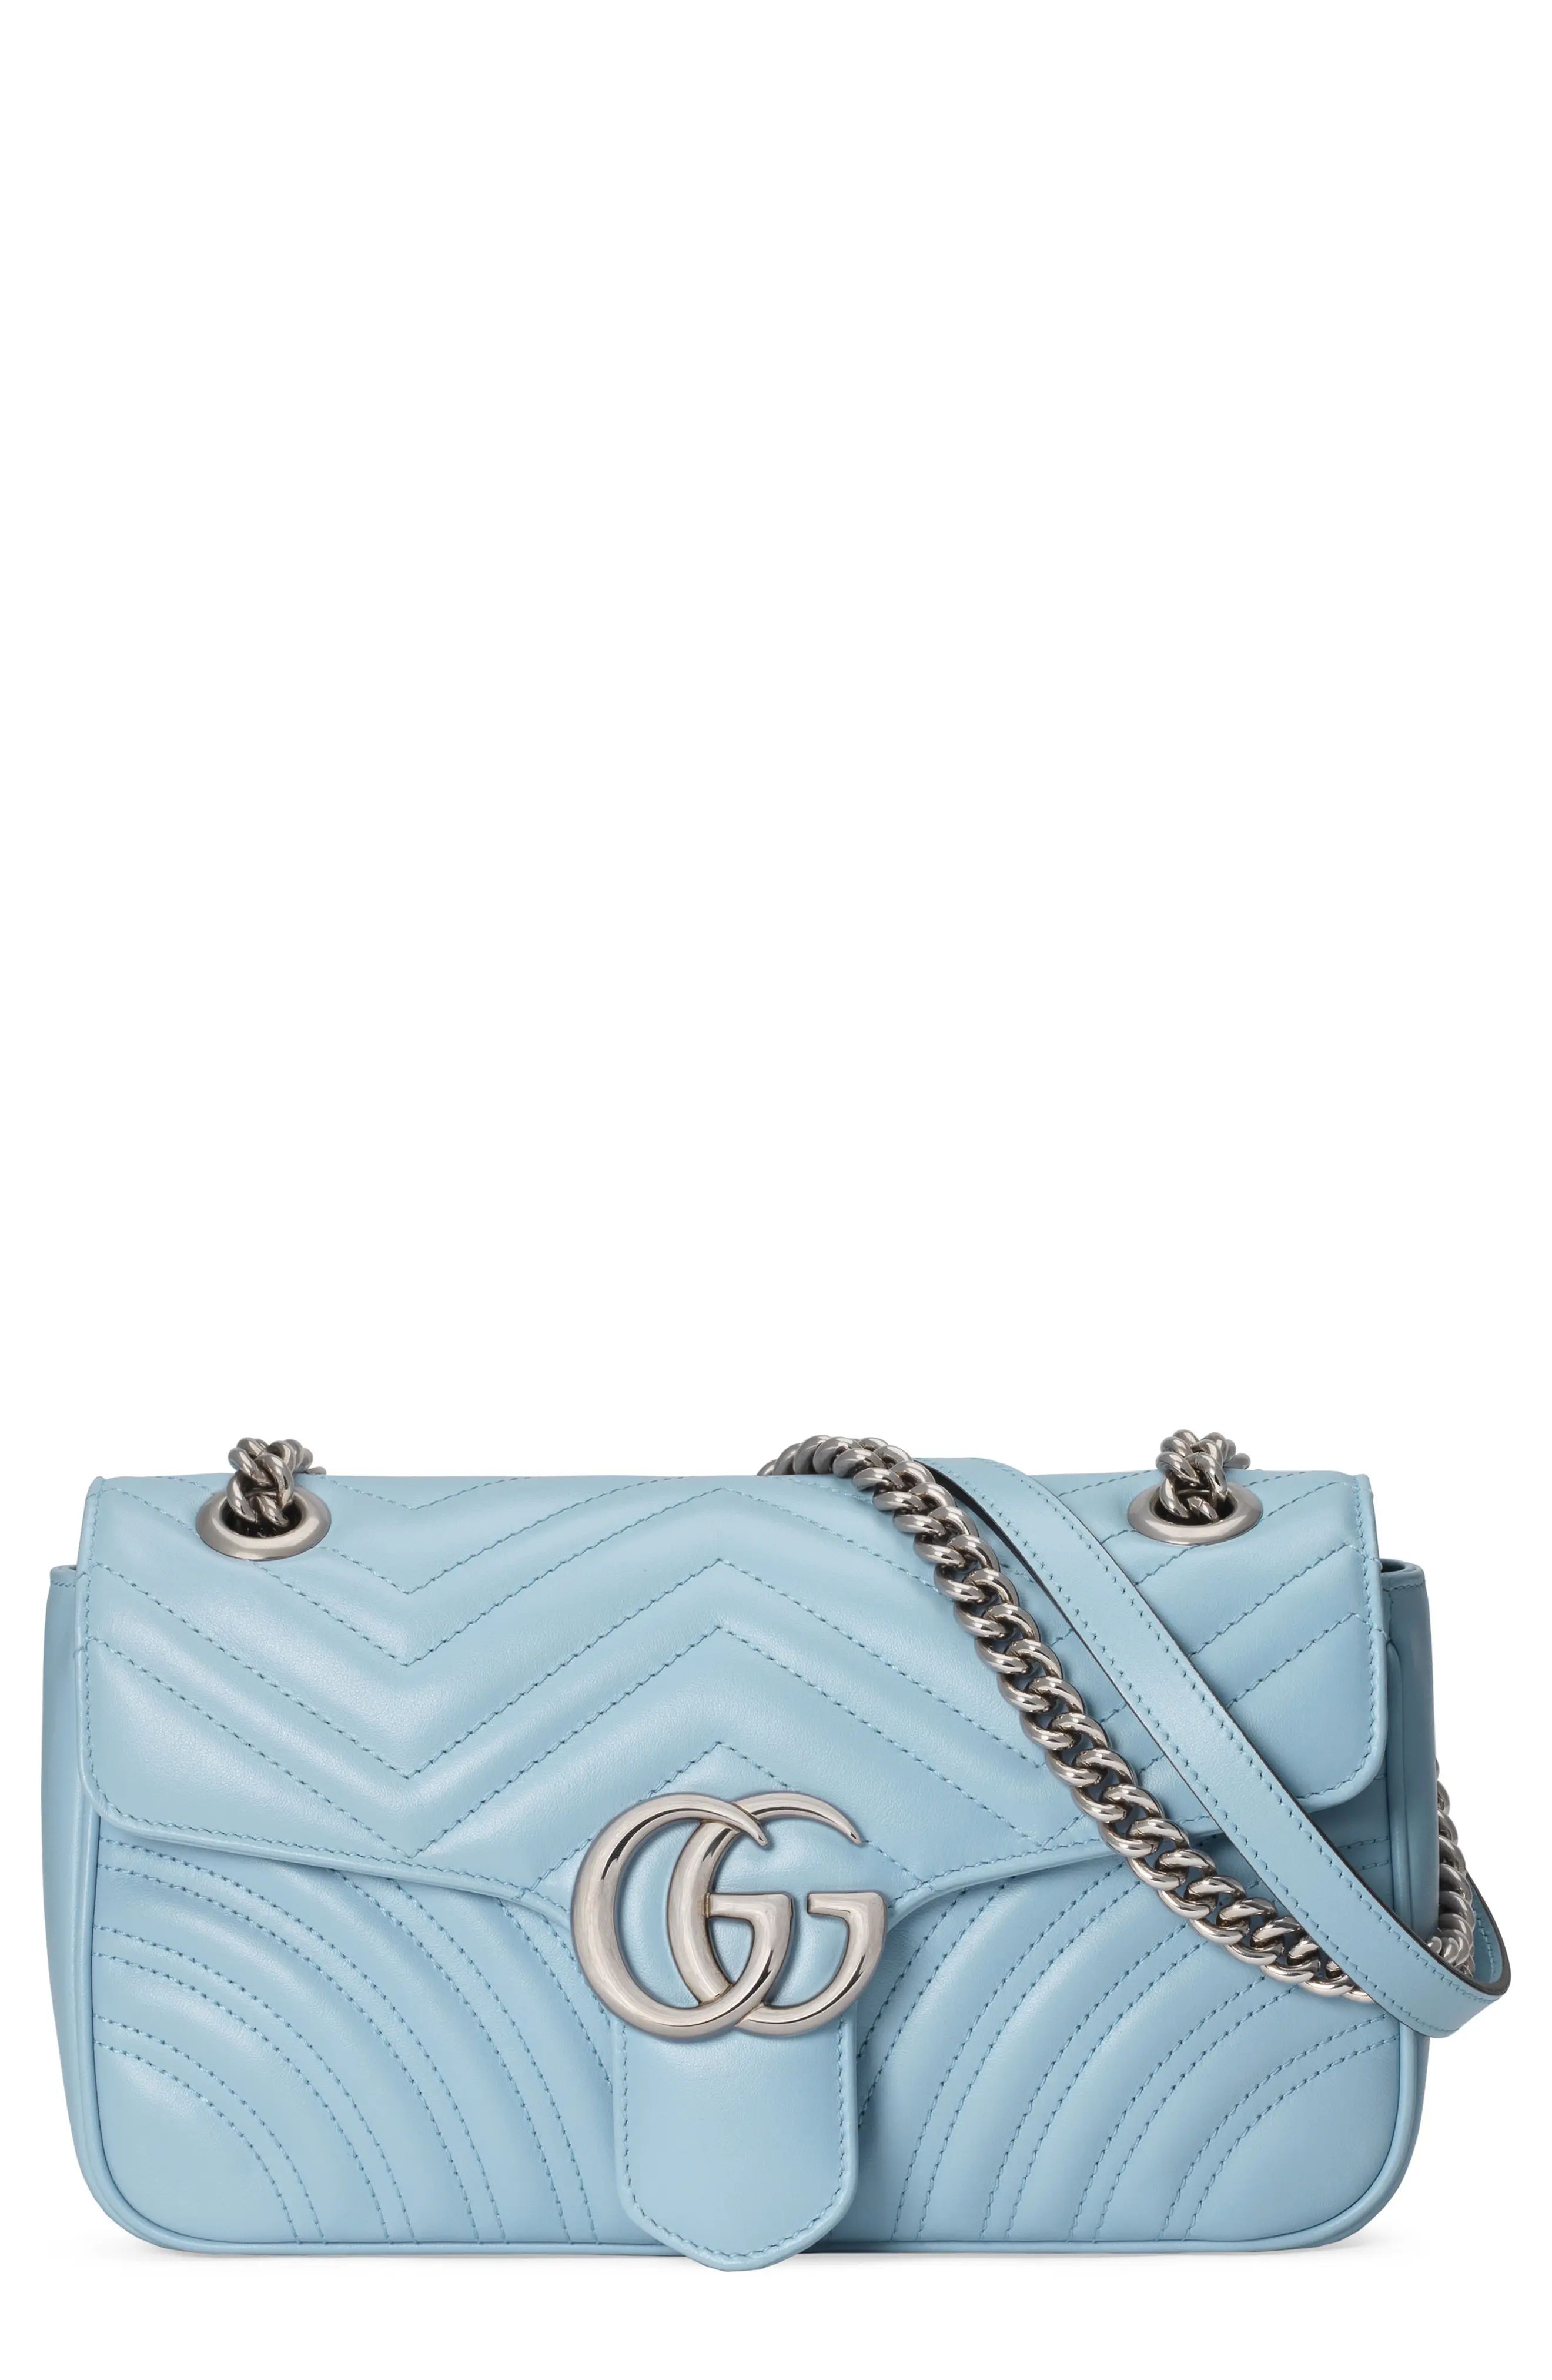 Gucci Small Gg 2.0 Matelasse Leather Shoulder Bag - Blue | Nordstrom